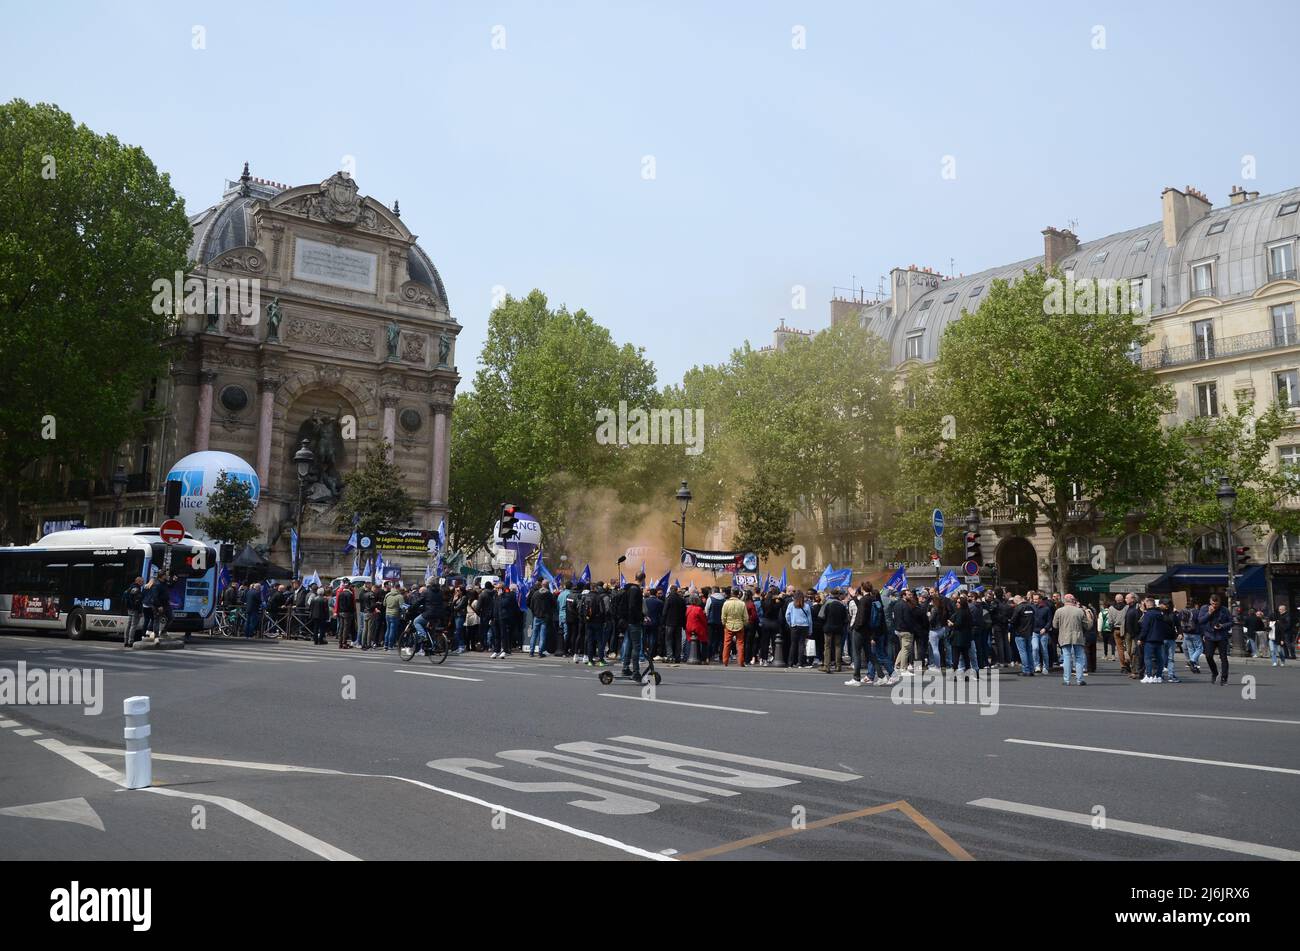 rally a Place saint michel a Parigi di poliziotti arrabbiati per la decisione di indagare l'assassinio di uno dei loro colleghi Foto Stock